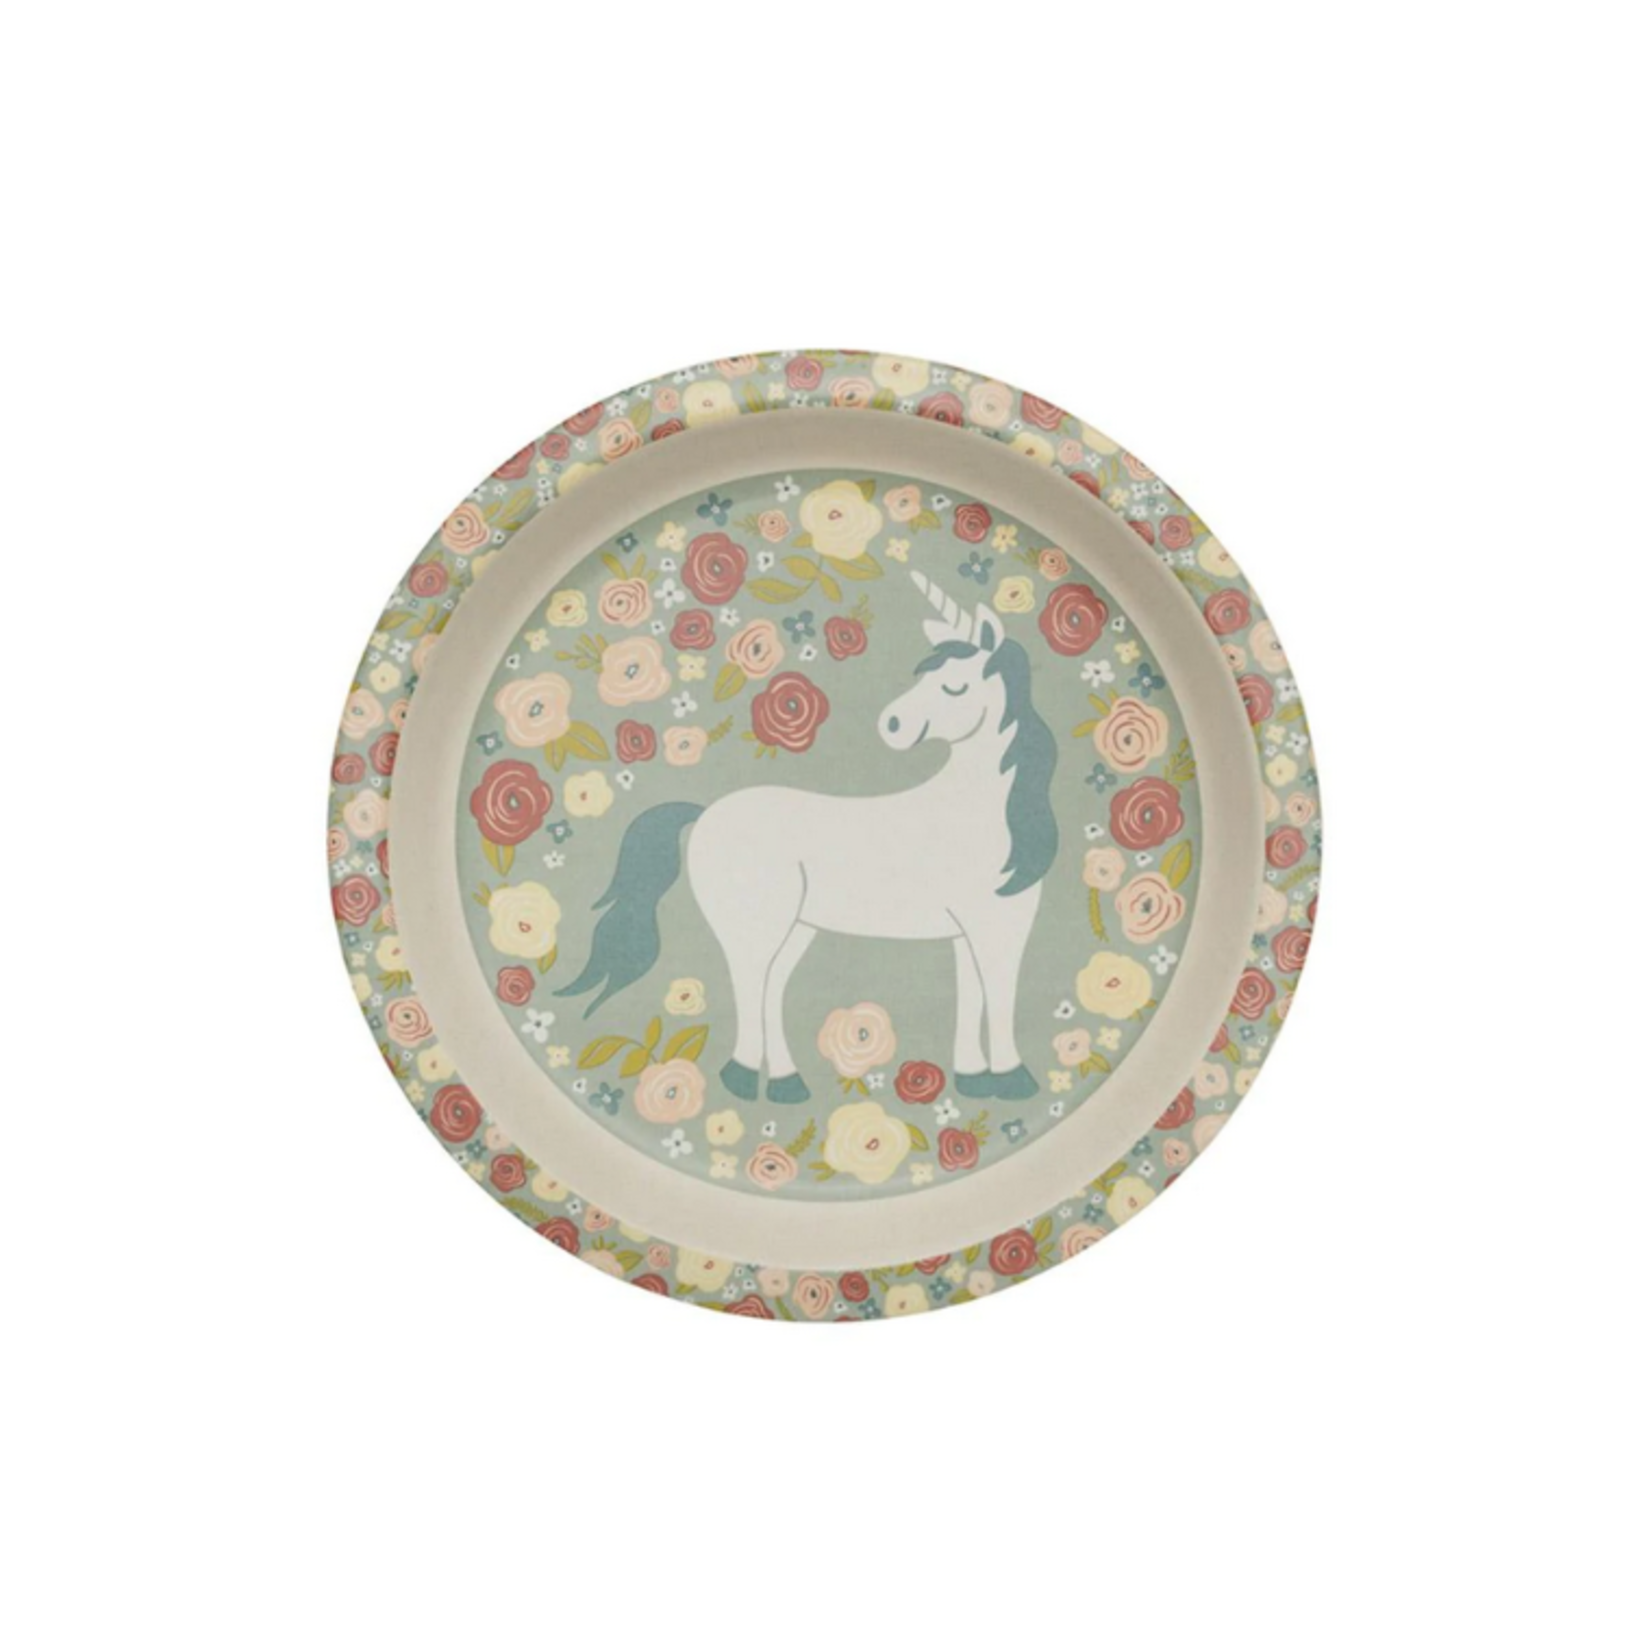 ORE Originals Mini Plate, Unicorn